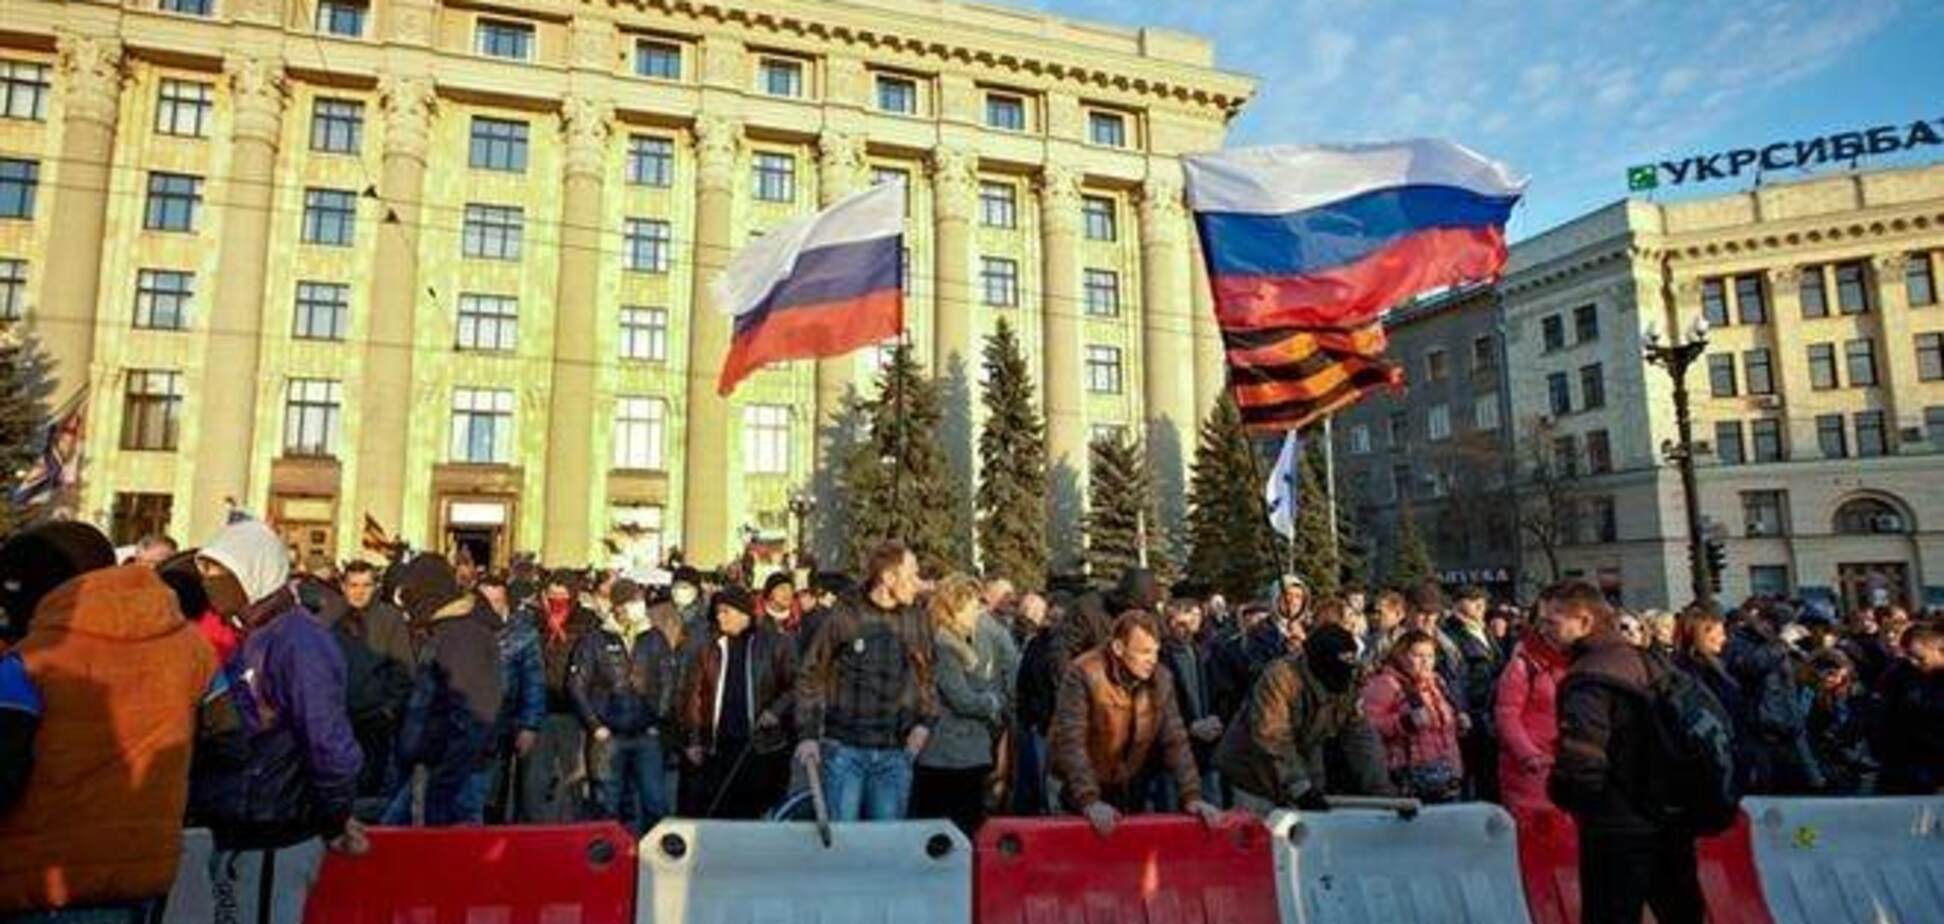 МИД ФРГ ждет сдержанной реакции России на сепаратизм в Украине